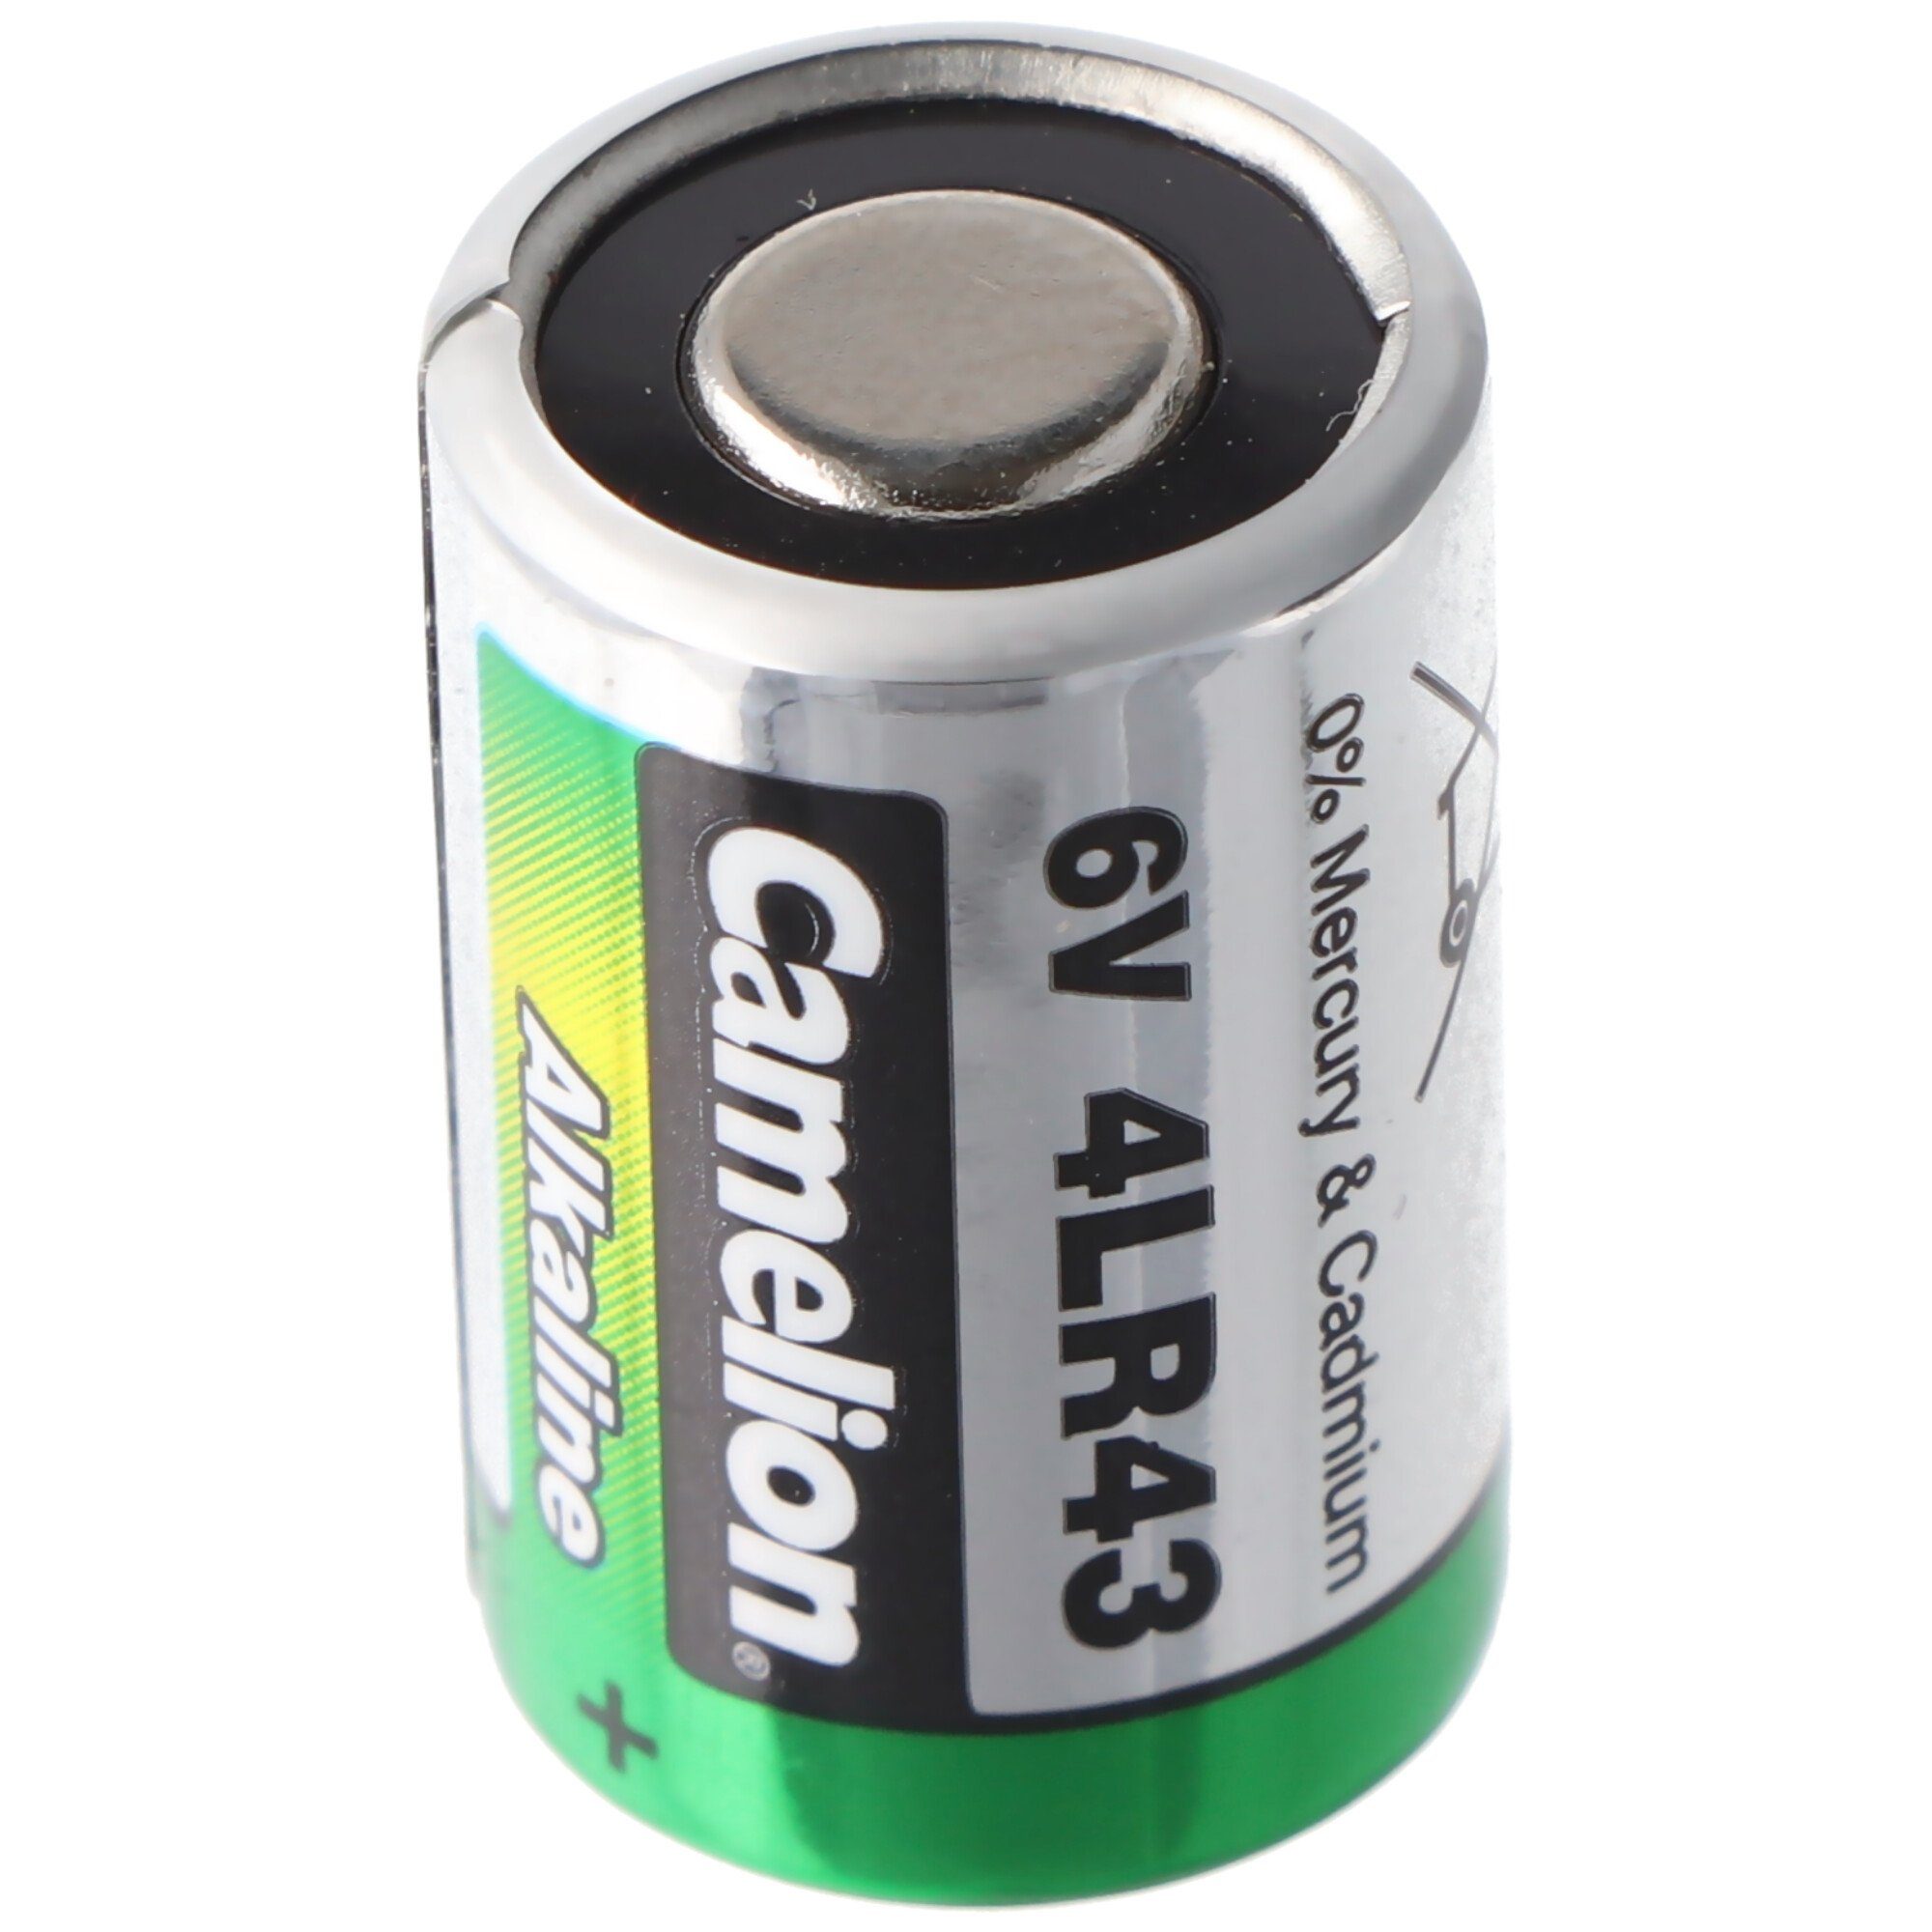 Camelion PX27 Alkaline Photo Batterie, 4AG12, 4LR43, 4NR43, EPX27 6Volt 12,7 x Fotobatterie, (6,0 V)